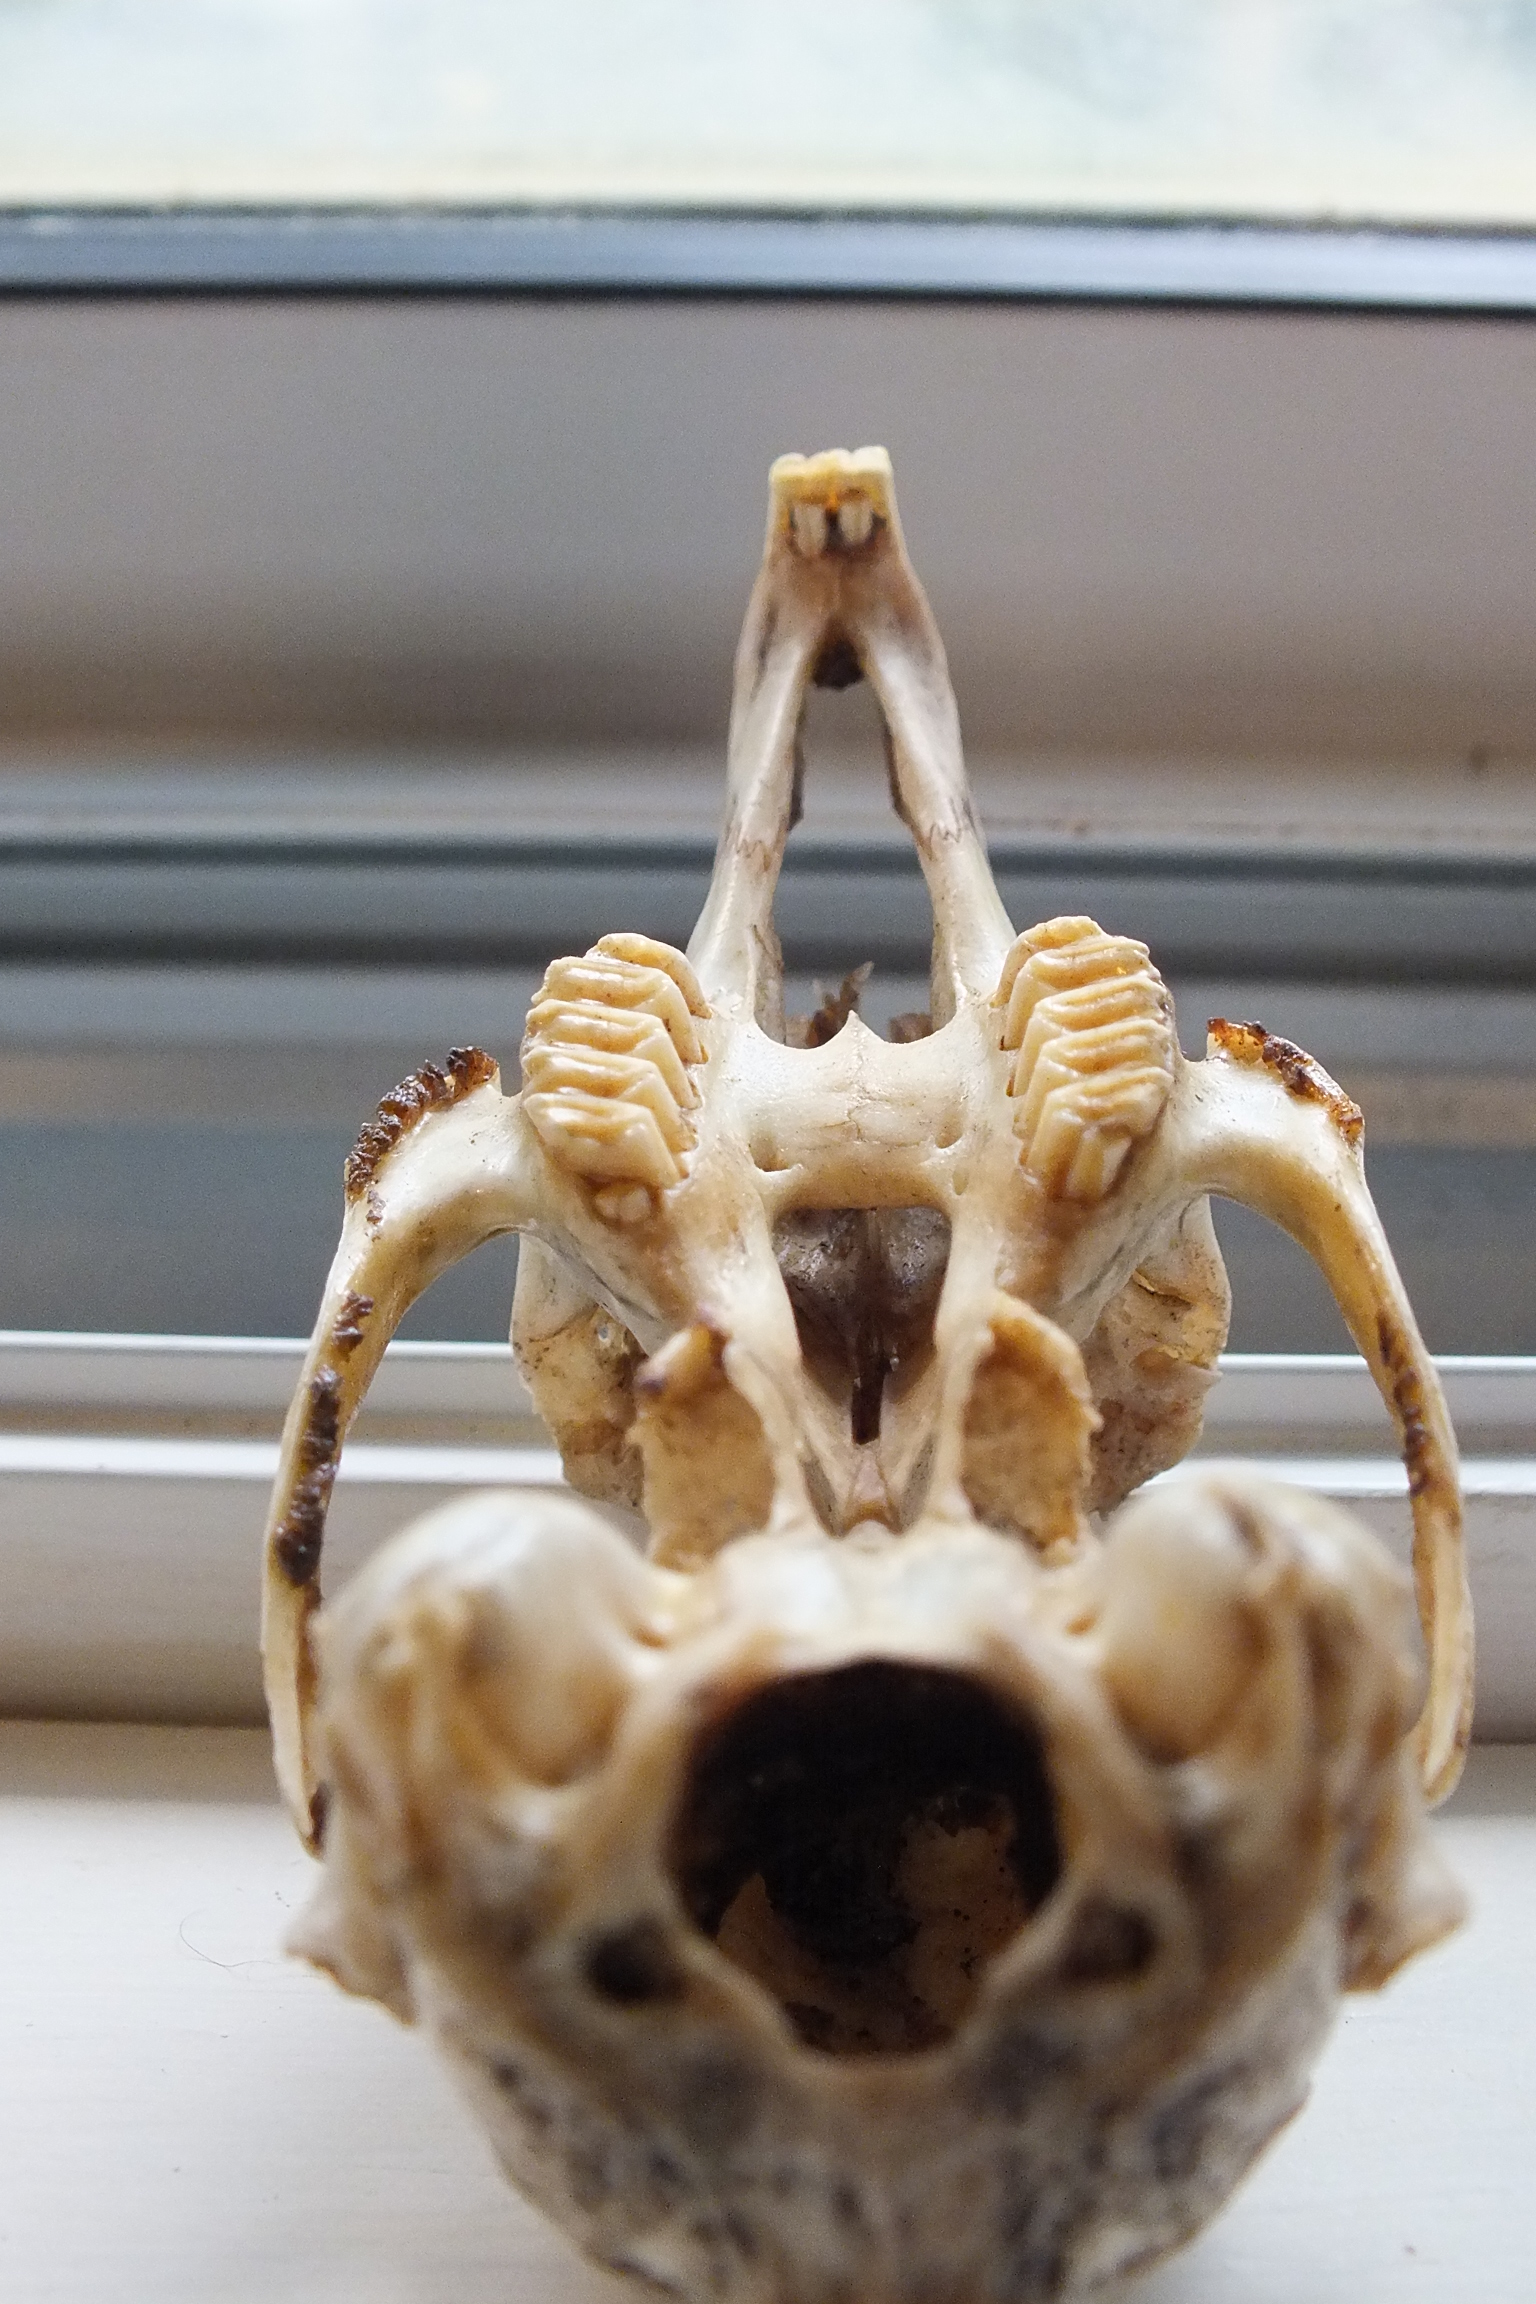 Animal Skull ID: Using Teeth - The Infinite Spider